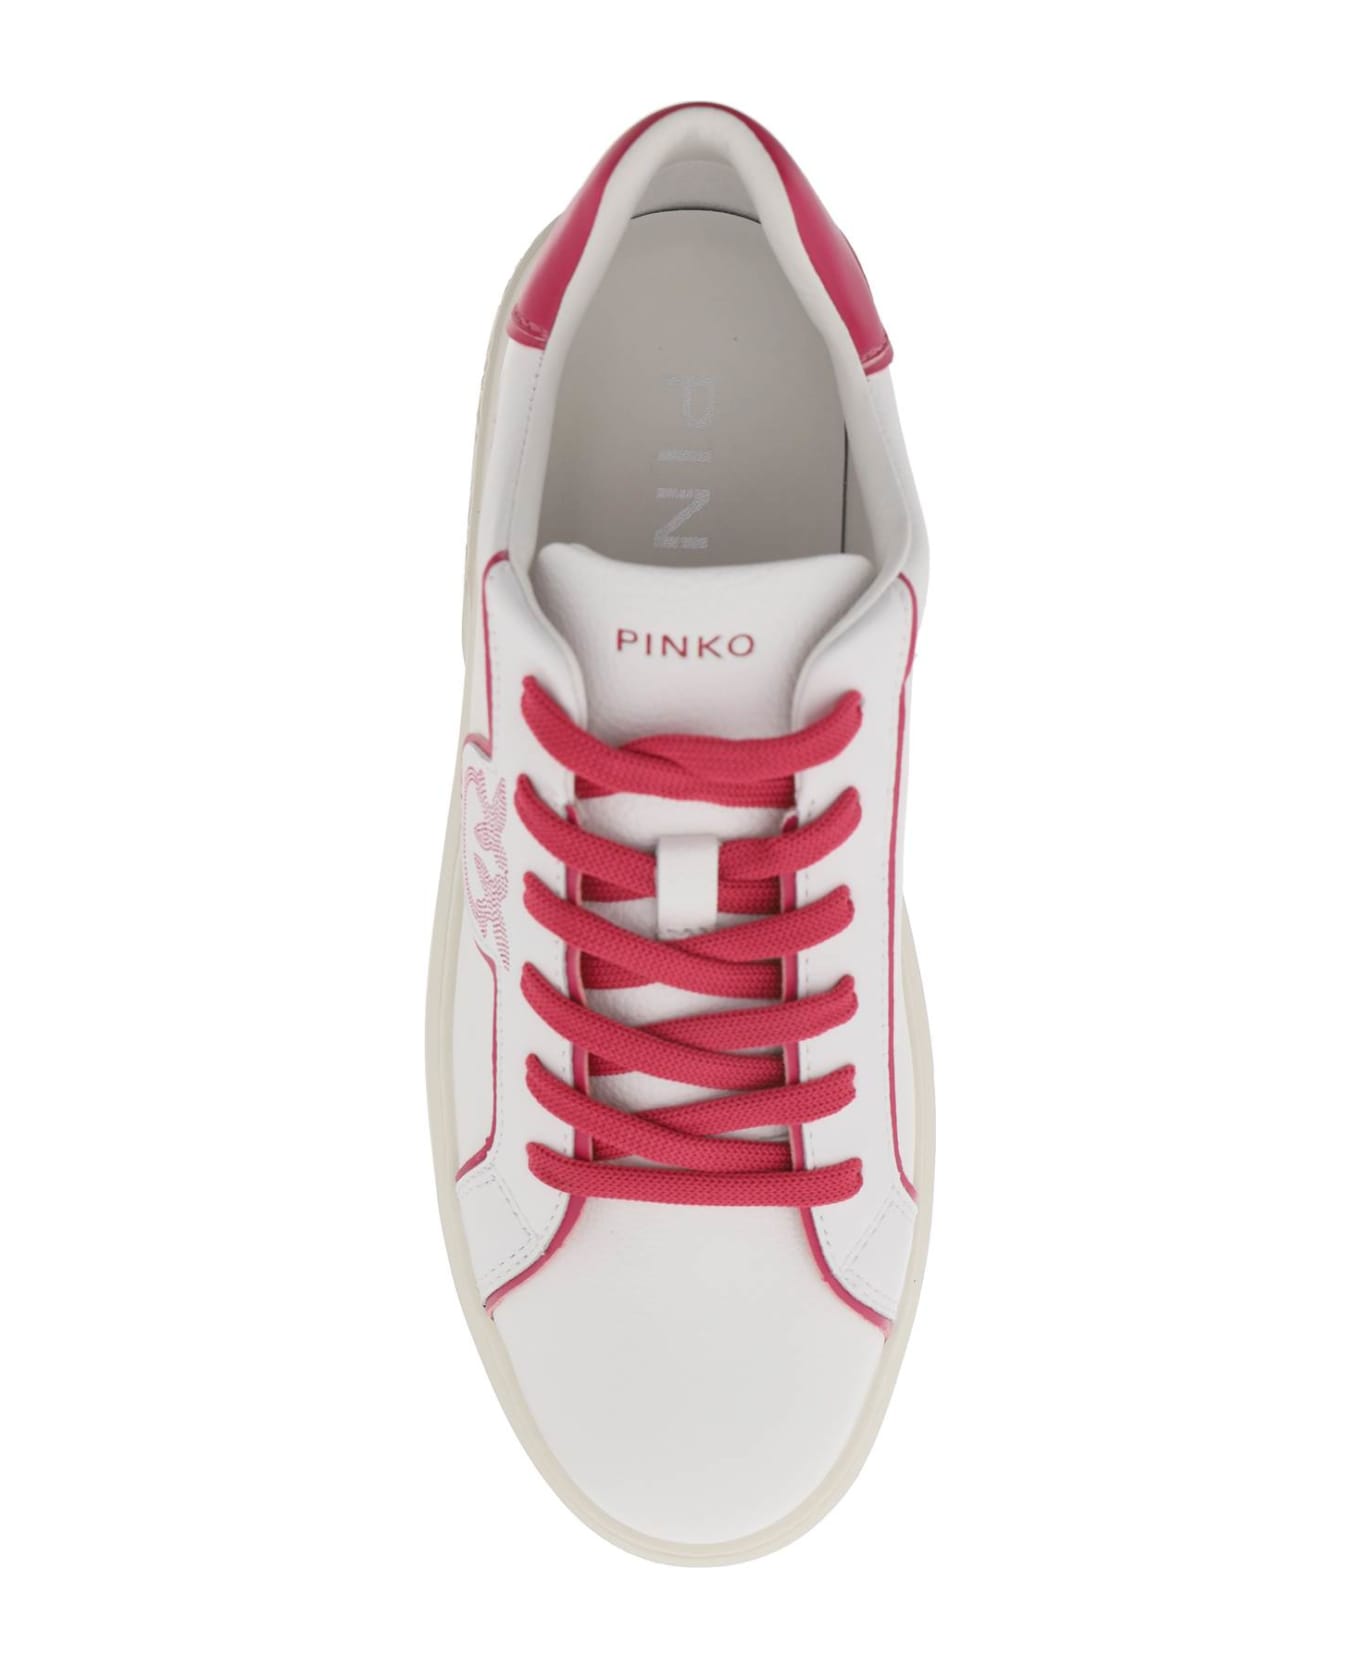 Pinko Leather Sneakers - WHITE PINK PINKO (White)